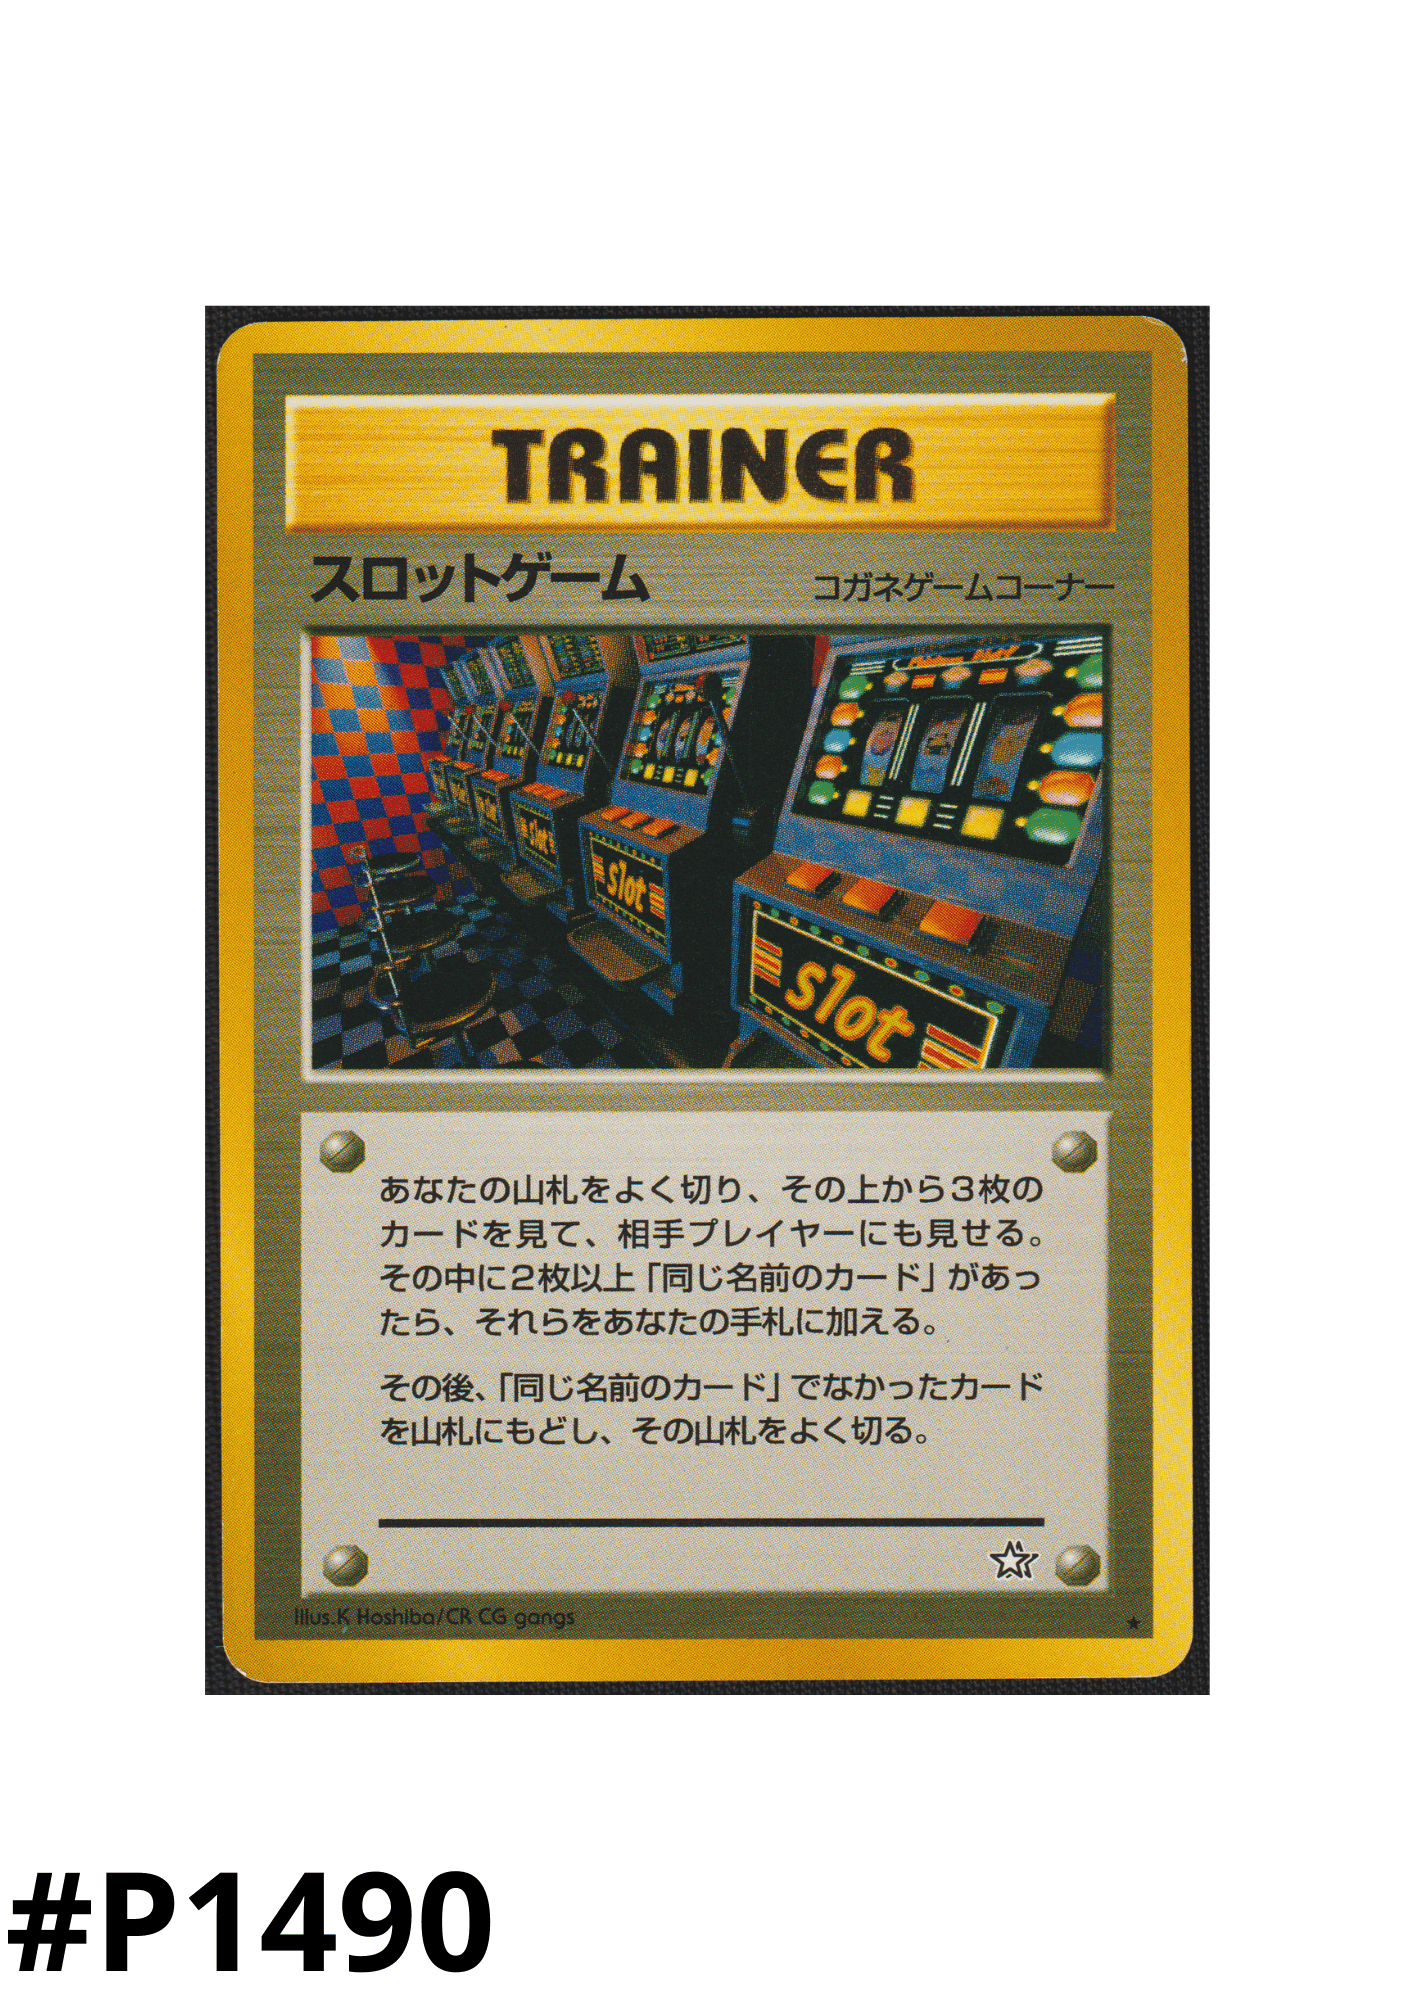 Arcade-Spiele | Neo-Genesis | Verboten ChitoroShop